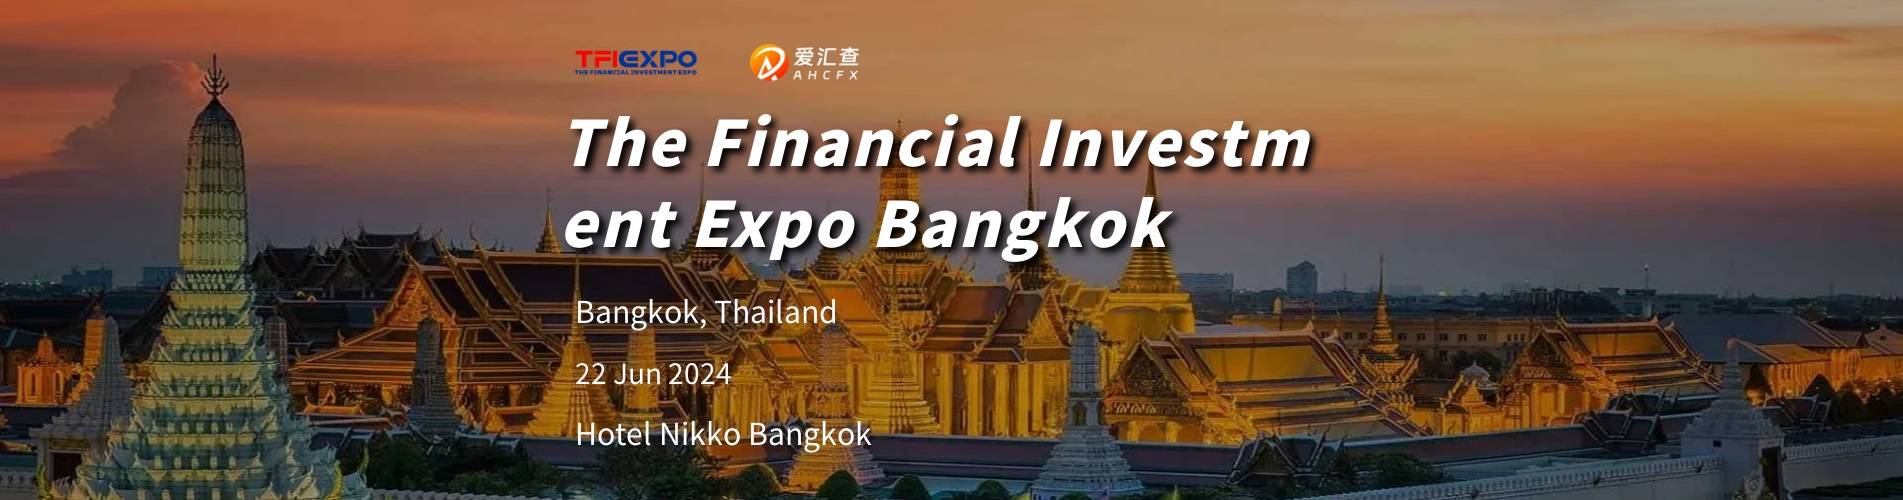 曼谷金融投资博览会